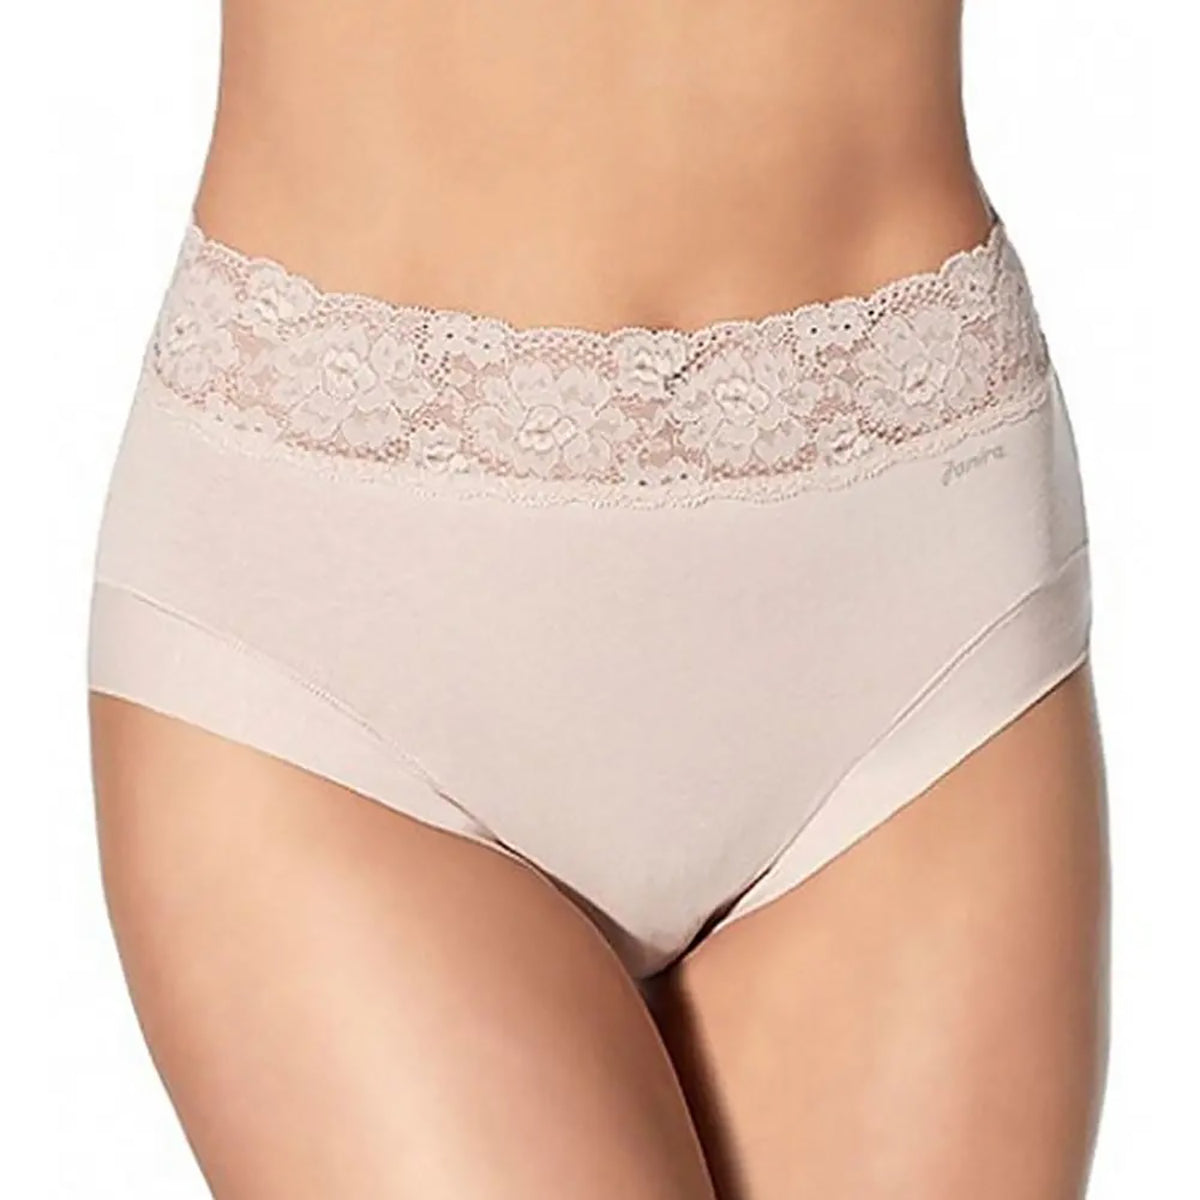 6 Pcs Women's Cotton High Cut Briefs Comfort Everyday Panties Underwear,L  XL 2XL 